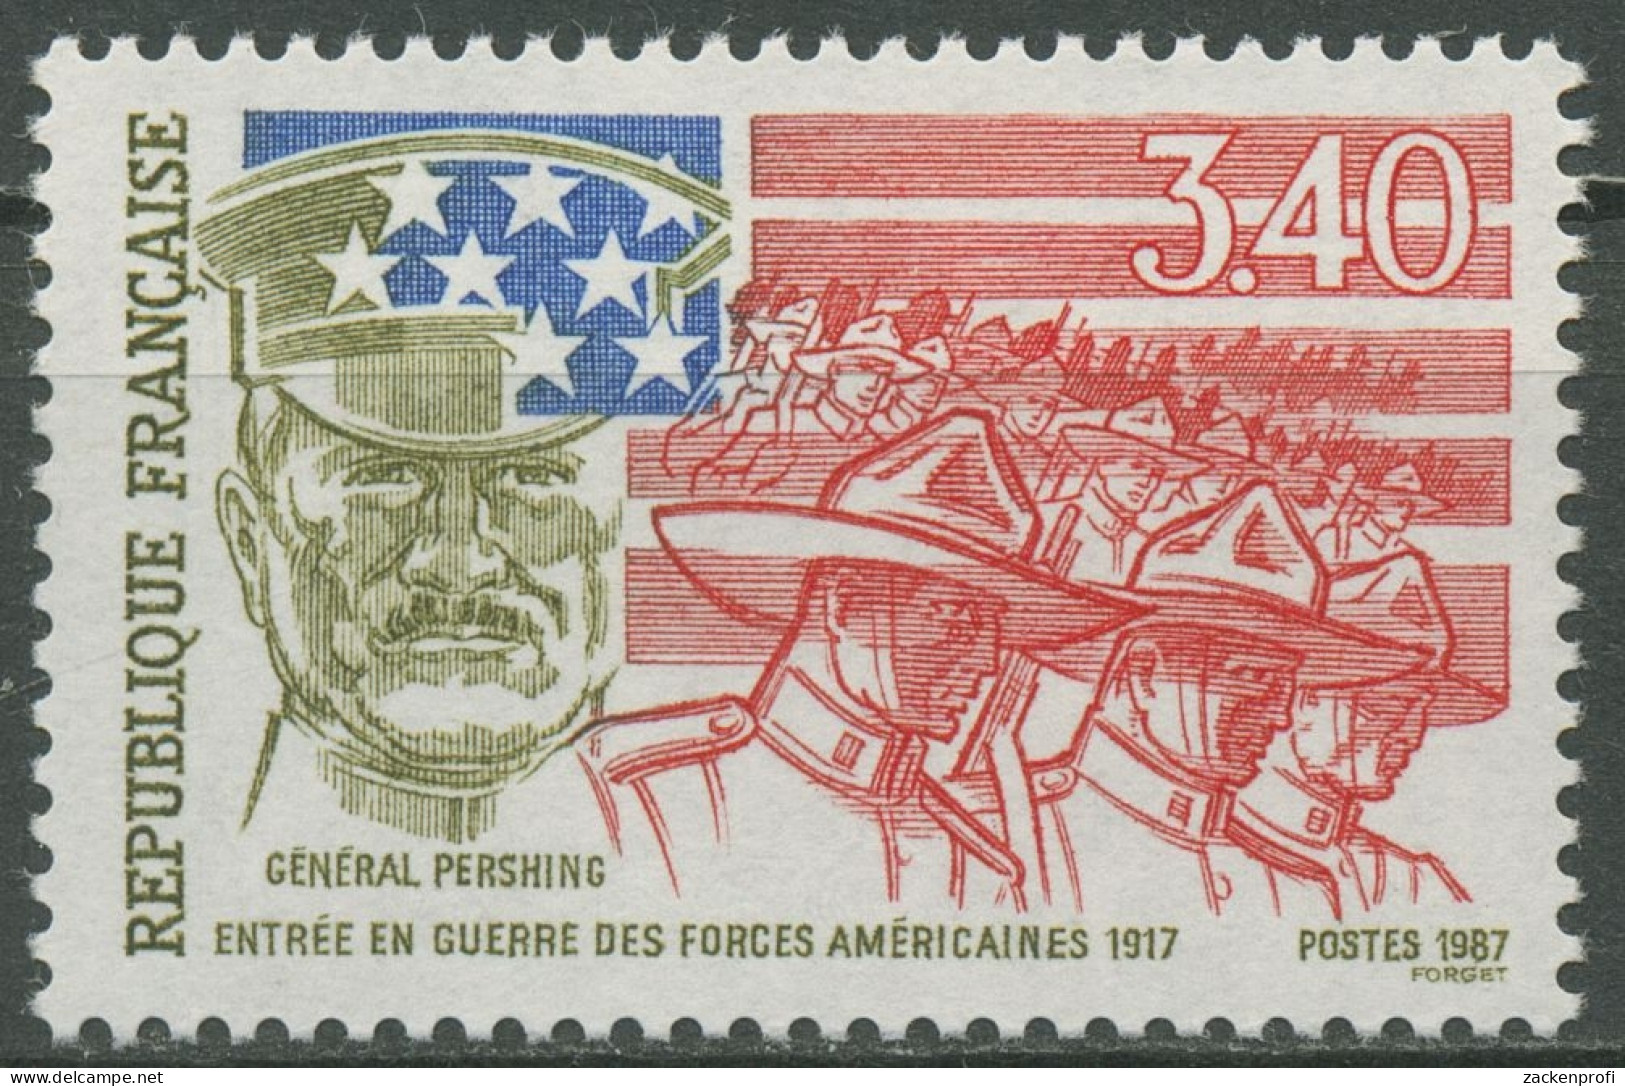 Frankreich 1987 USA Beginn Erster Weltkrieg 2612 Postfrisch - Ungebraucht